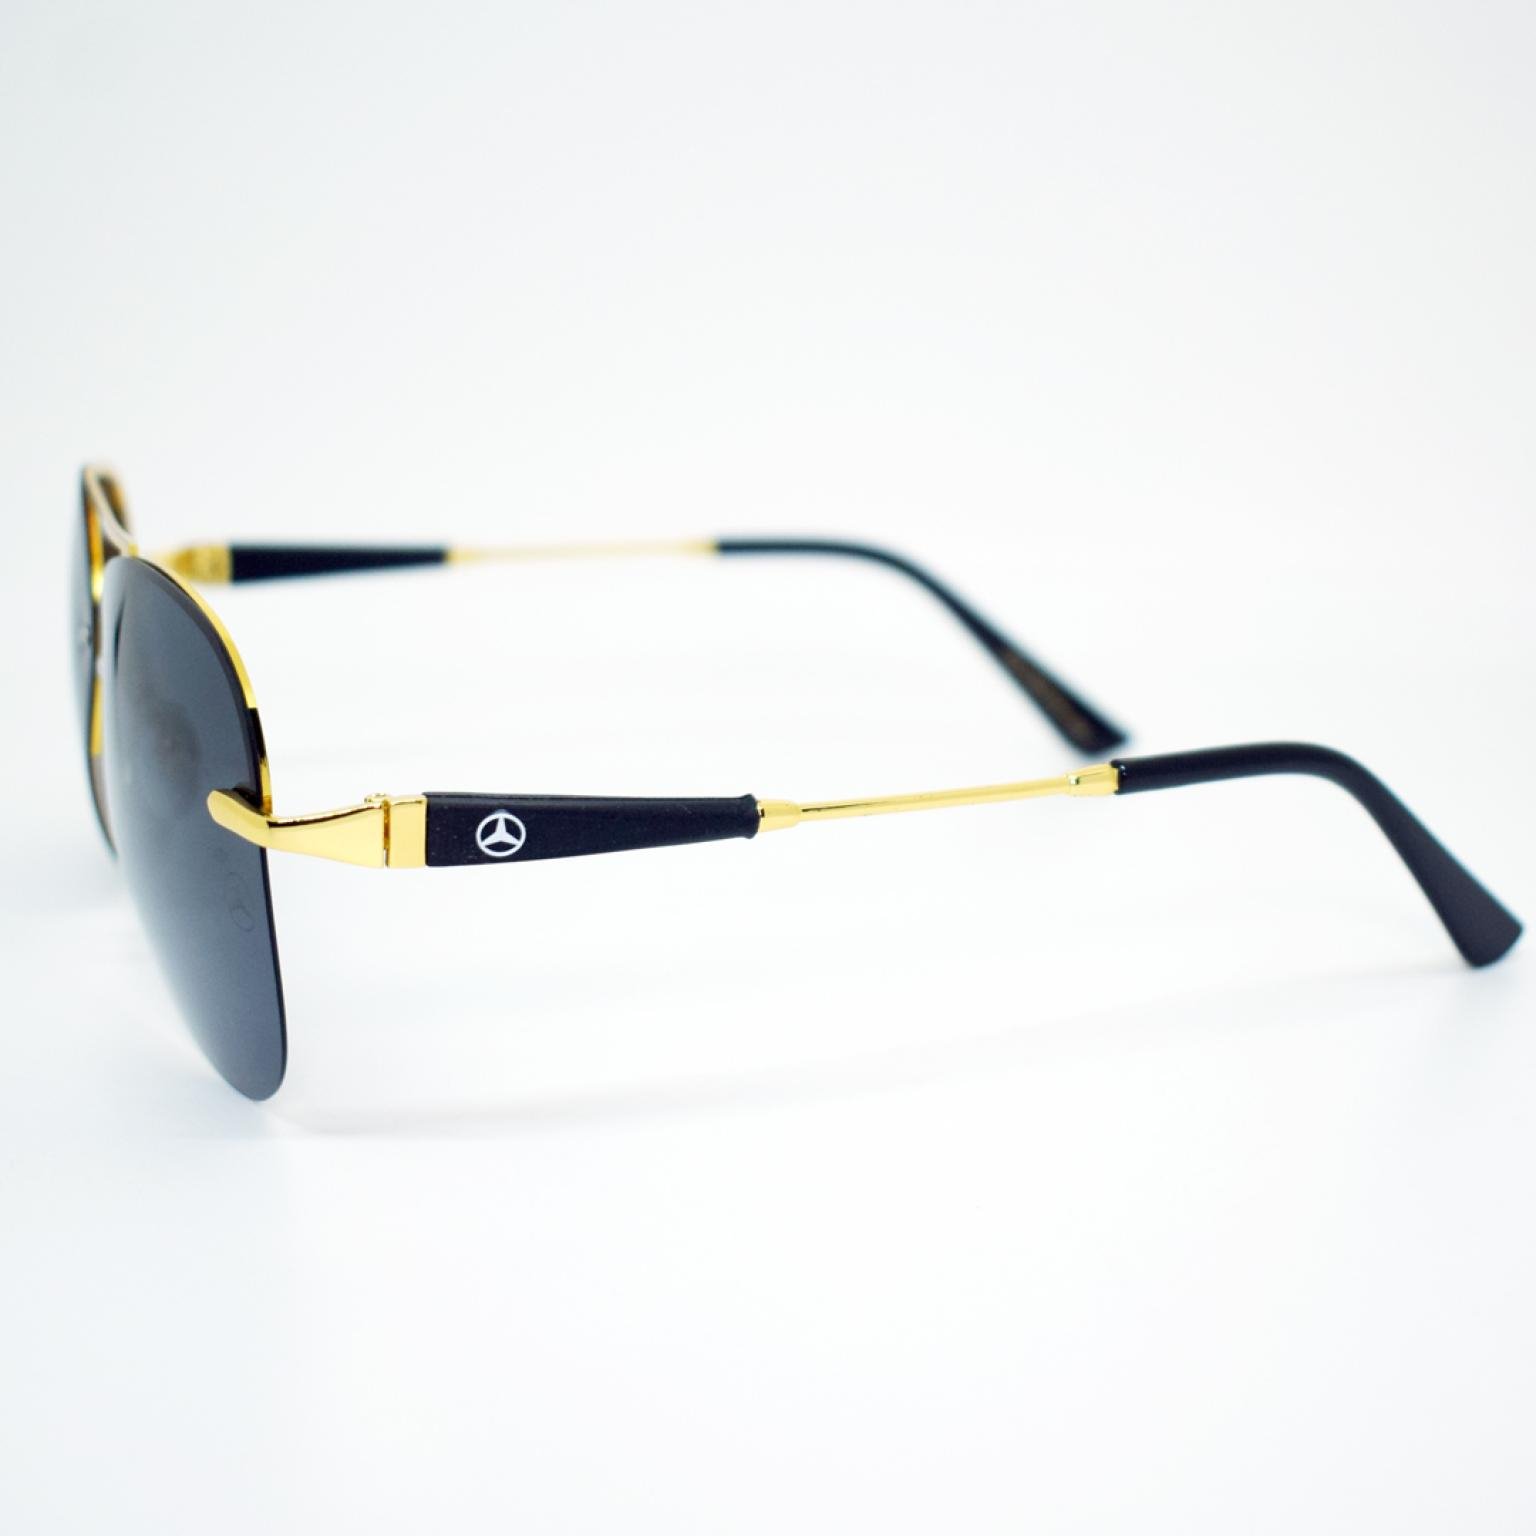 Golden Frame Rimless Polarized Aviator Shape Black Sunglasses For Men Women